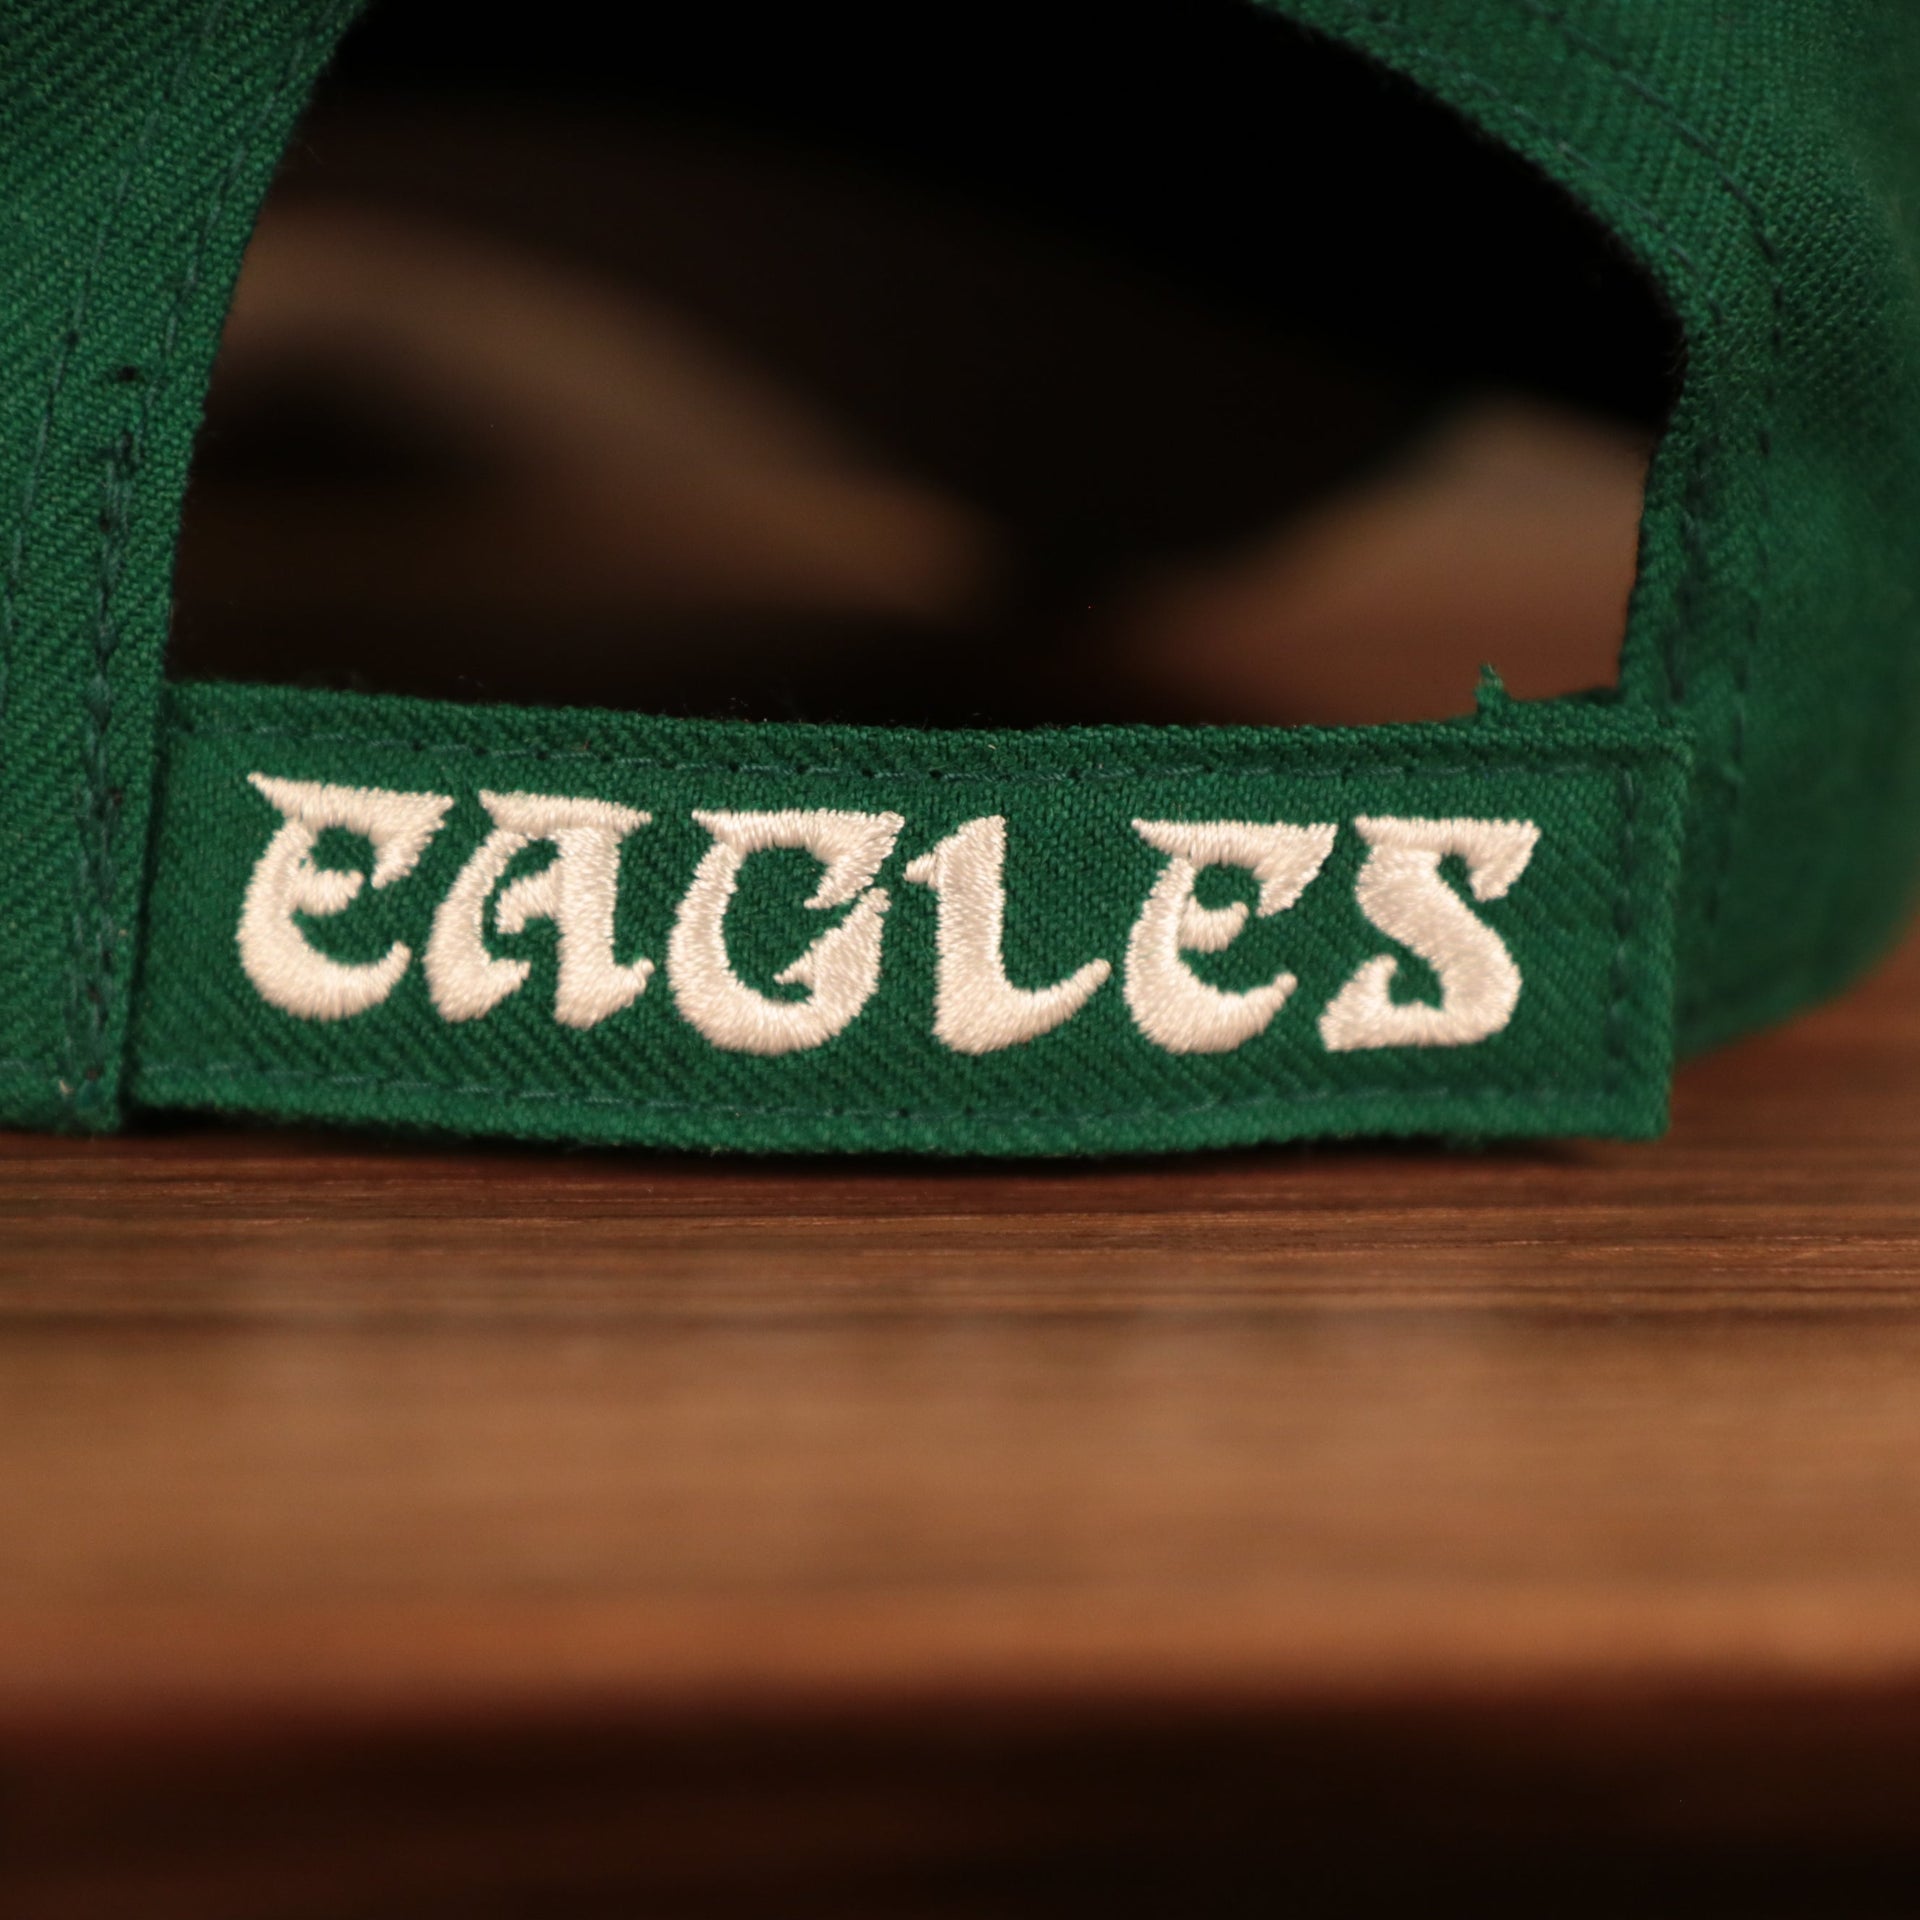 adjustable strap on the back Philadelphia Eagles Throwback Kelly Green Adjustable Dad Hat OSFM